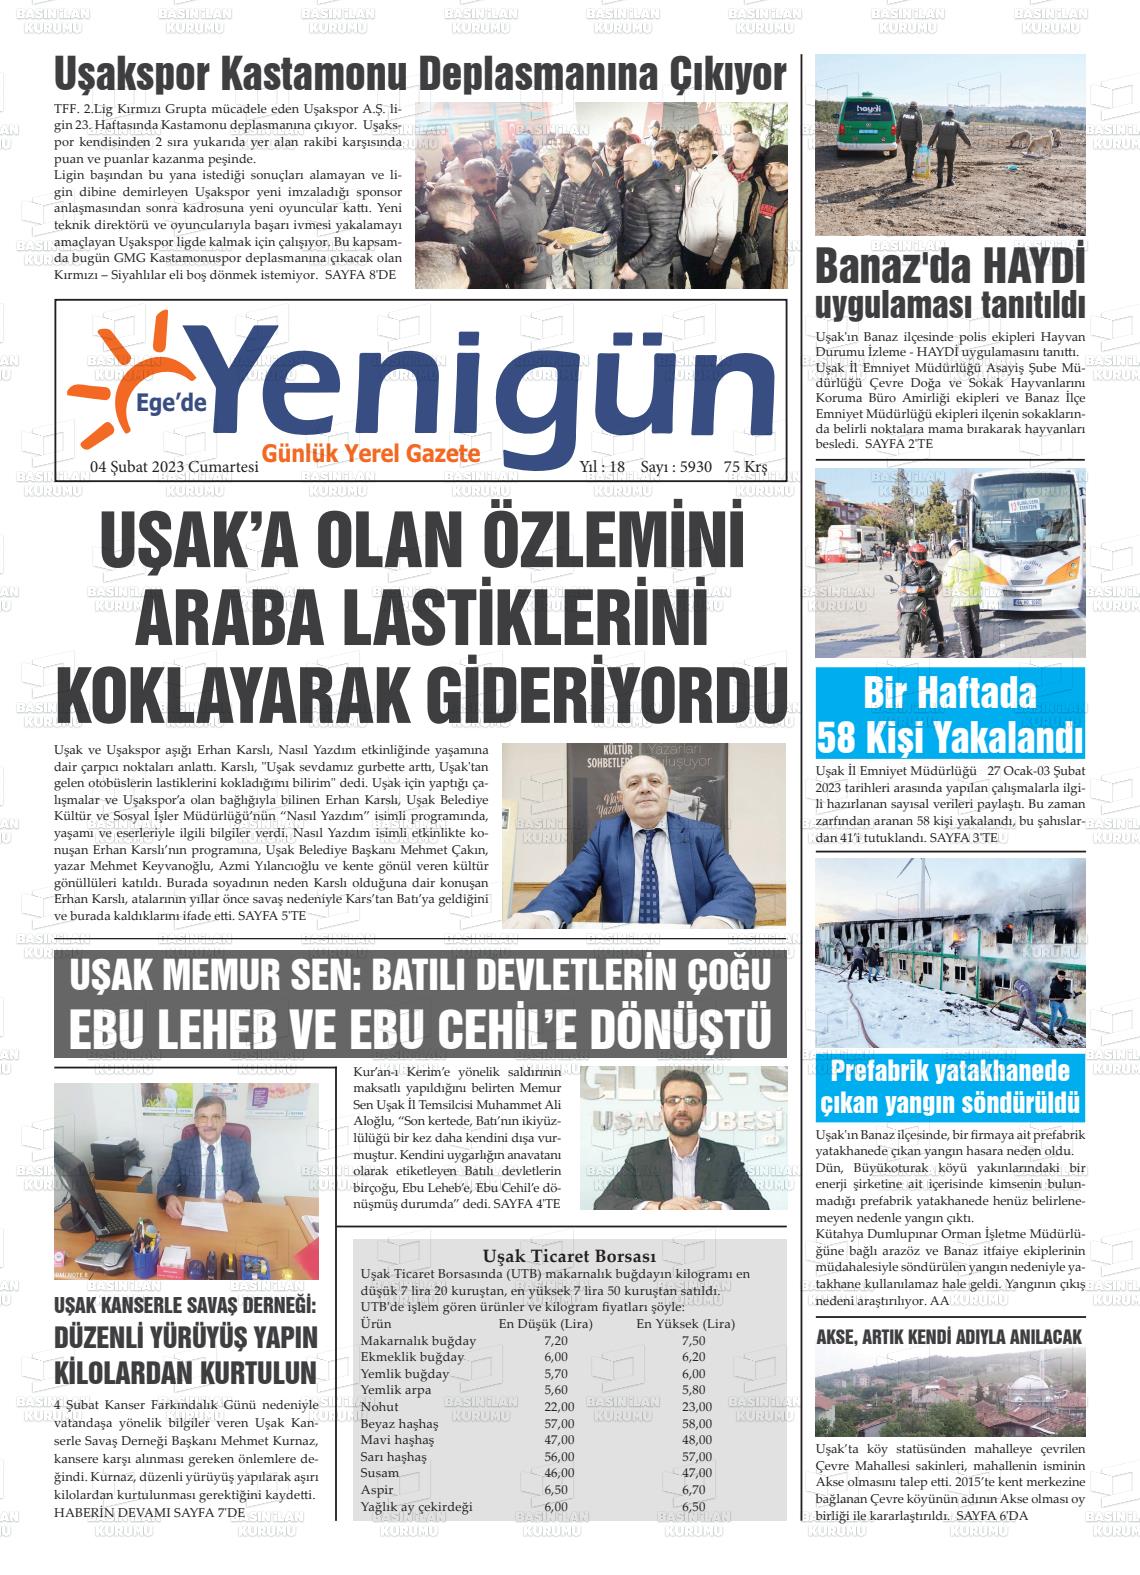 04 Şubat 2023 EGE'DE YENİGÜN GAZETESİ Gazete Manşeti